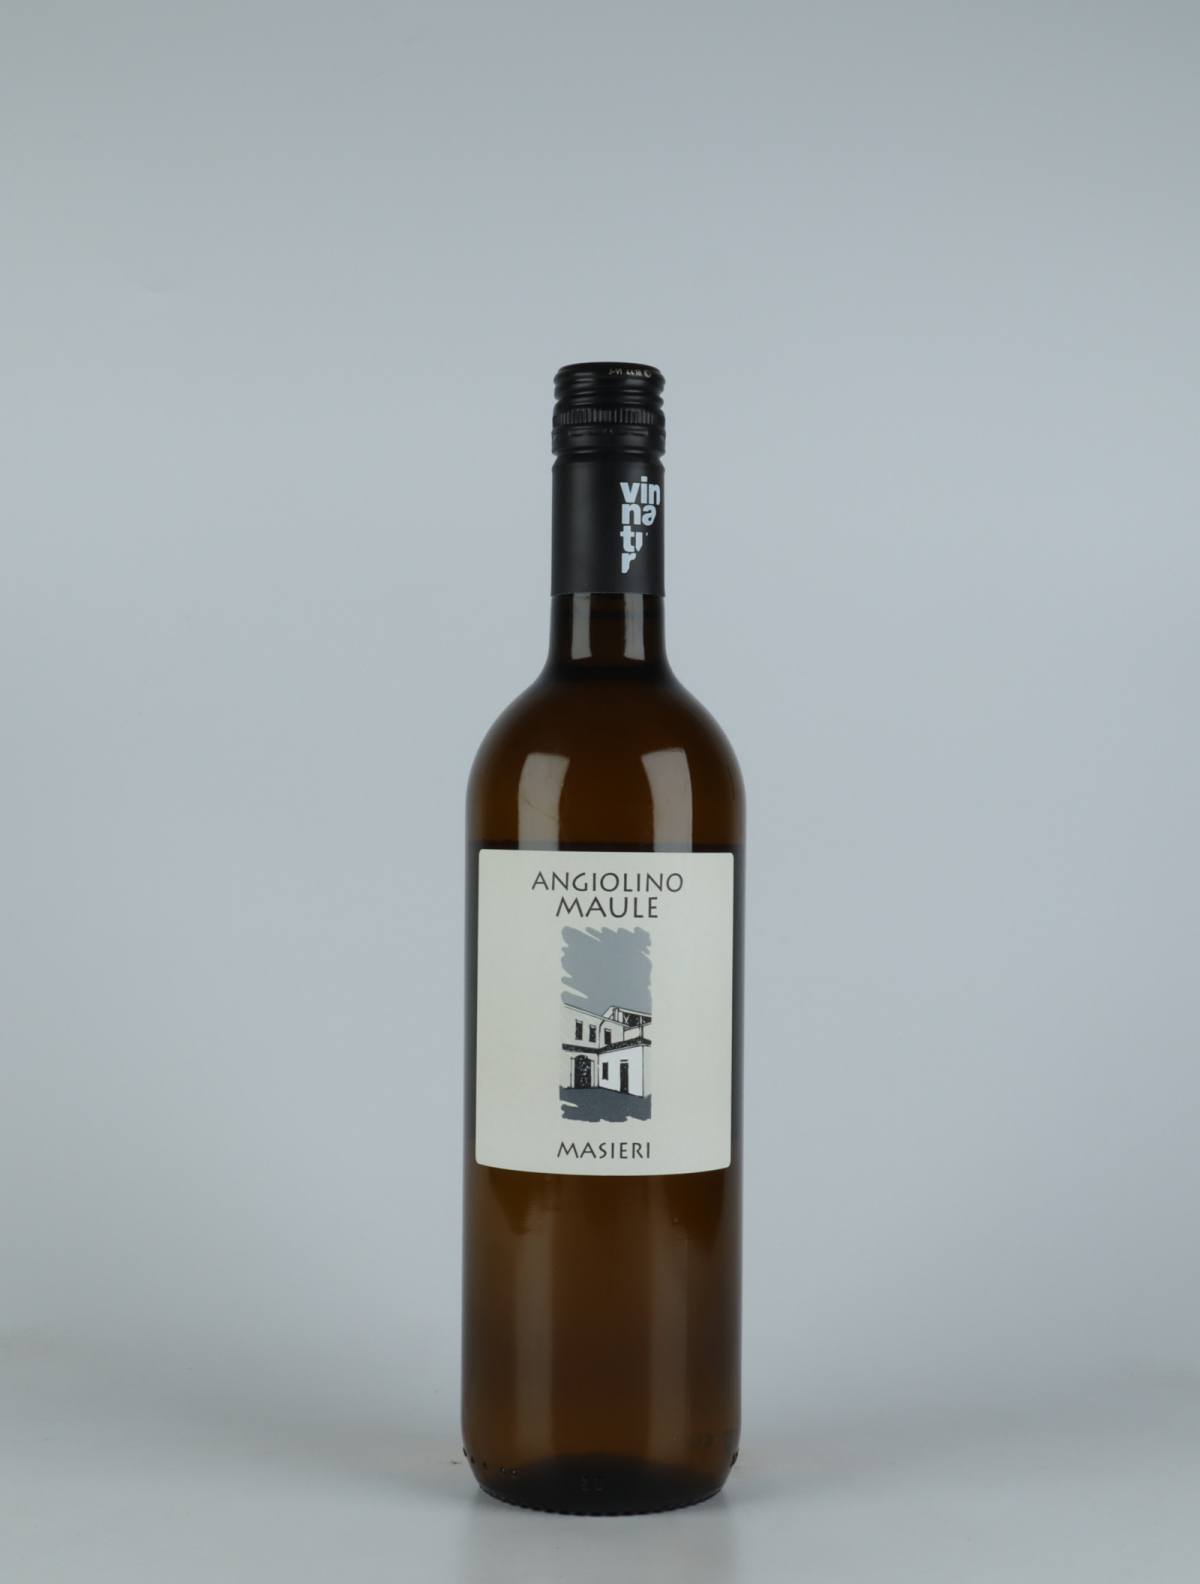 A bottle 2021 Masieri White wine from La Biancara di Angiolino Maule, Veneto in Italy